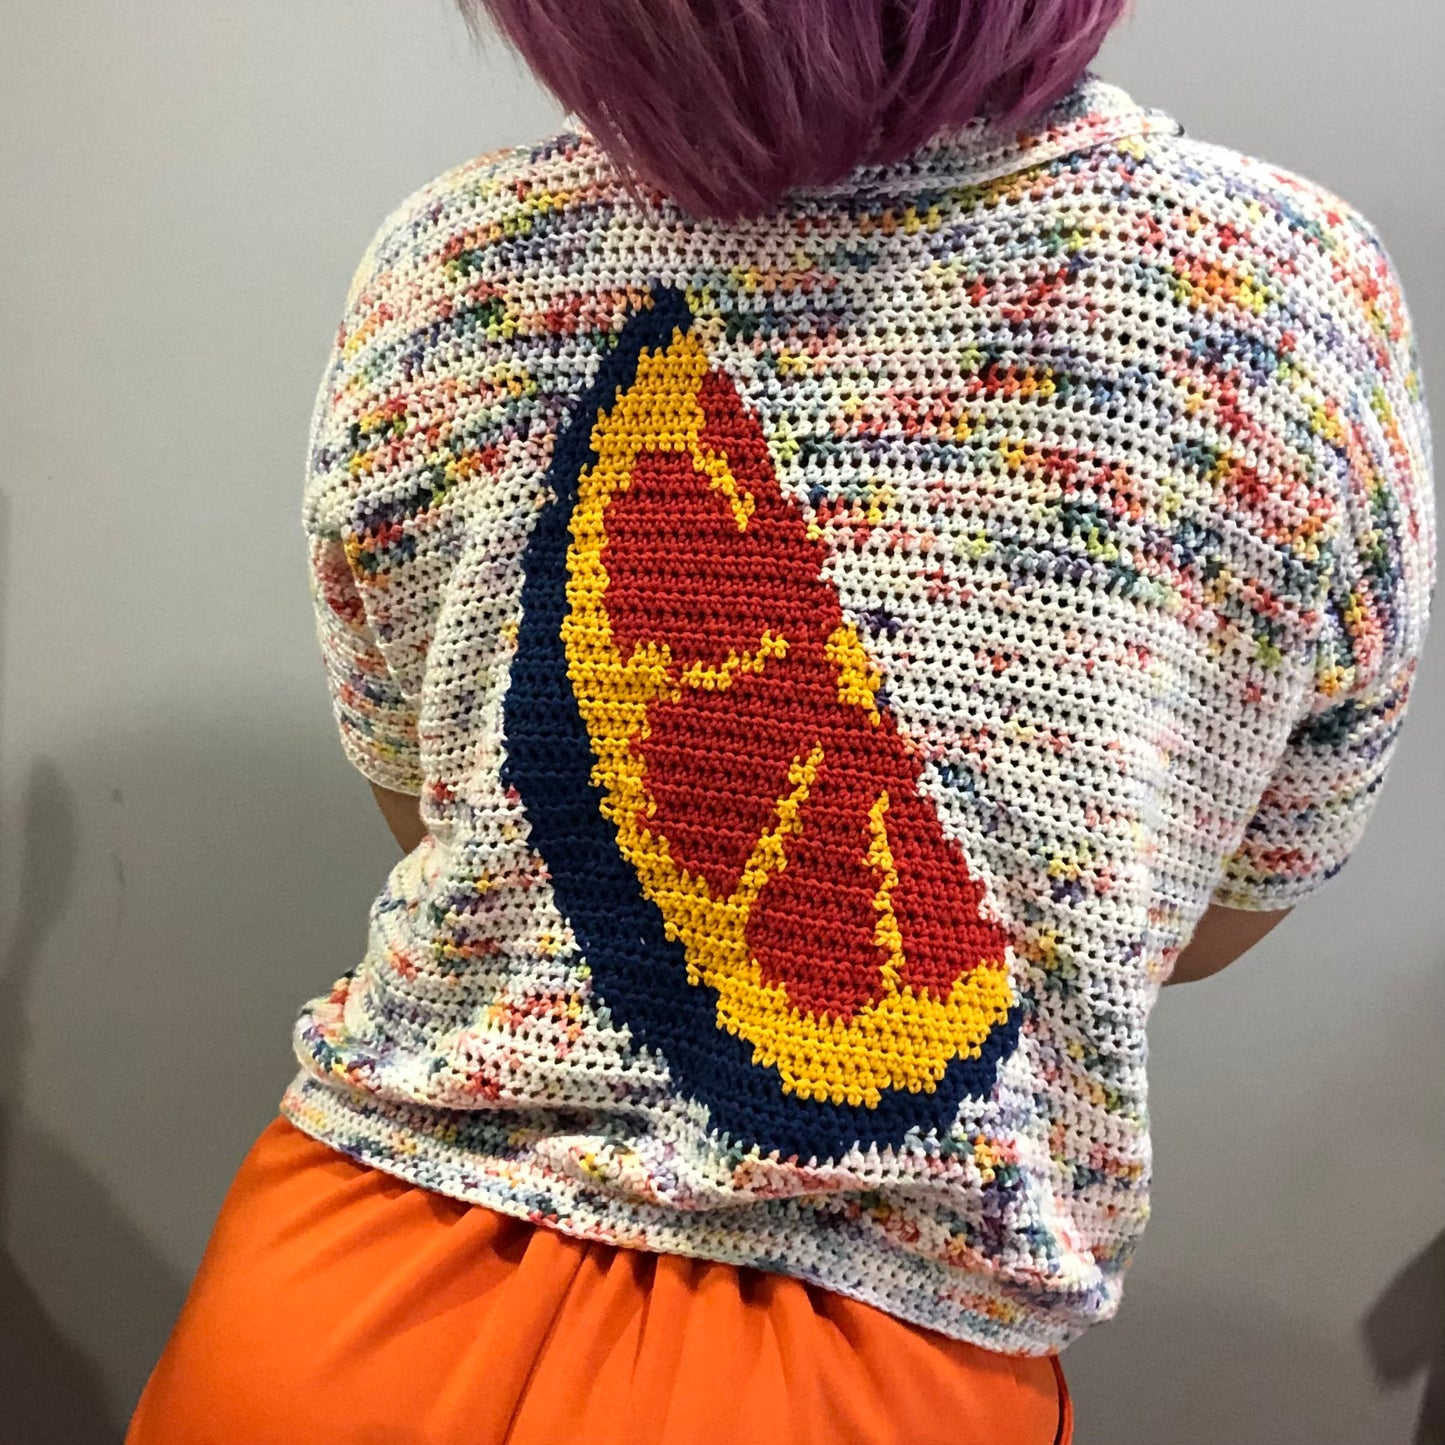 pattern: fruity button crochet pattern